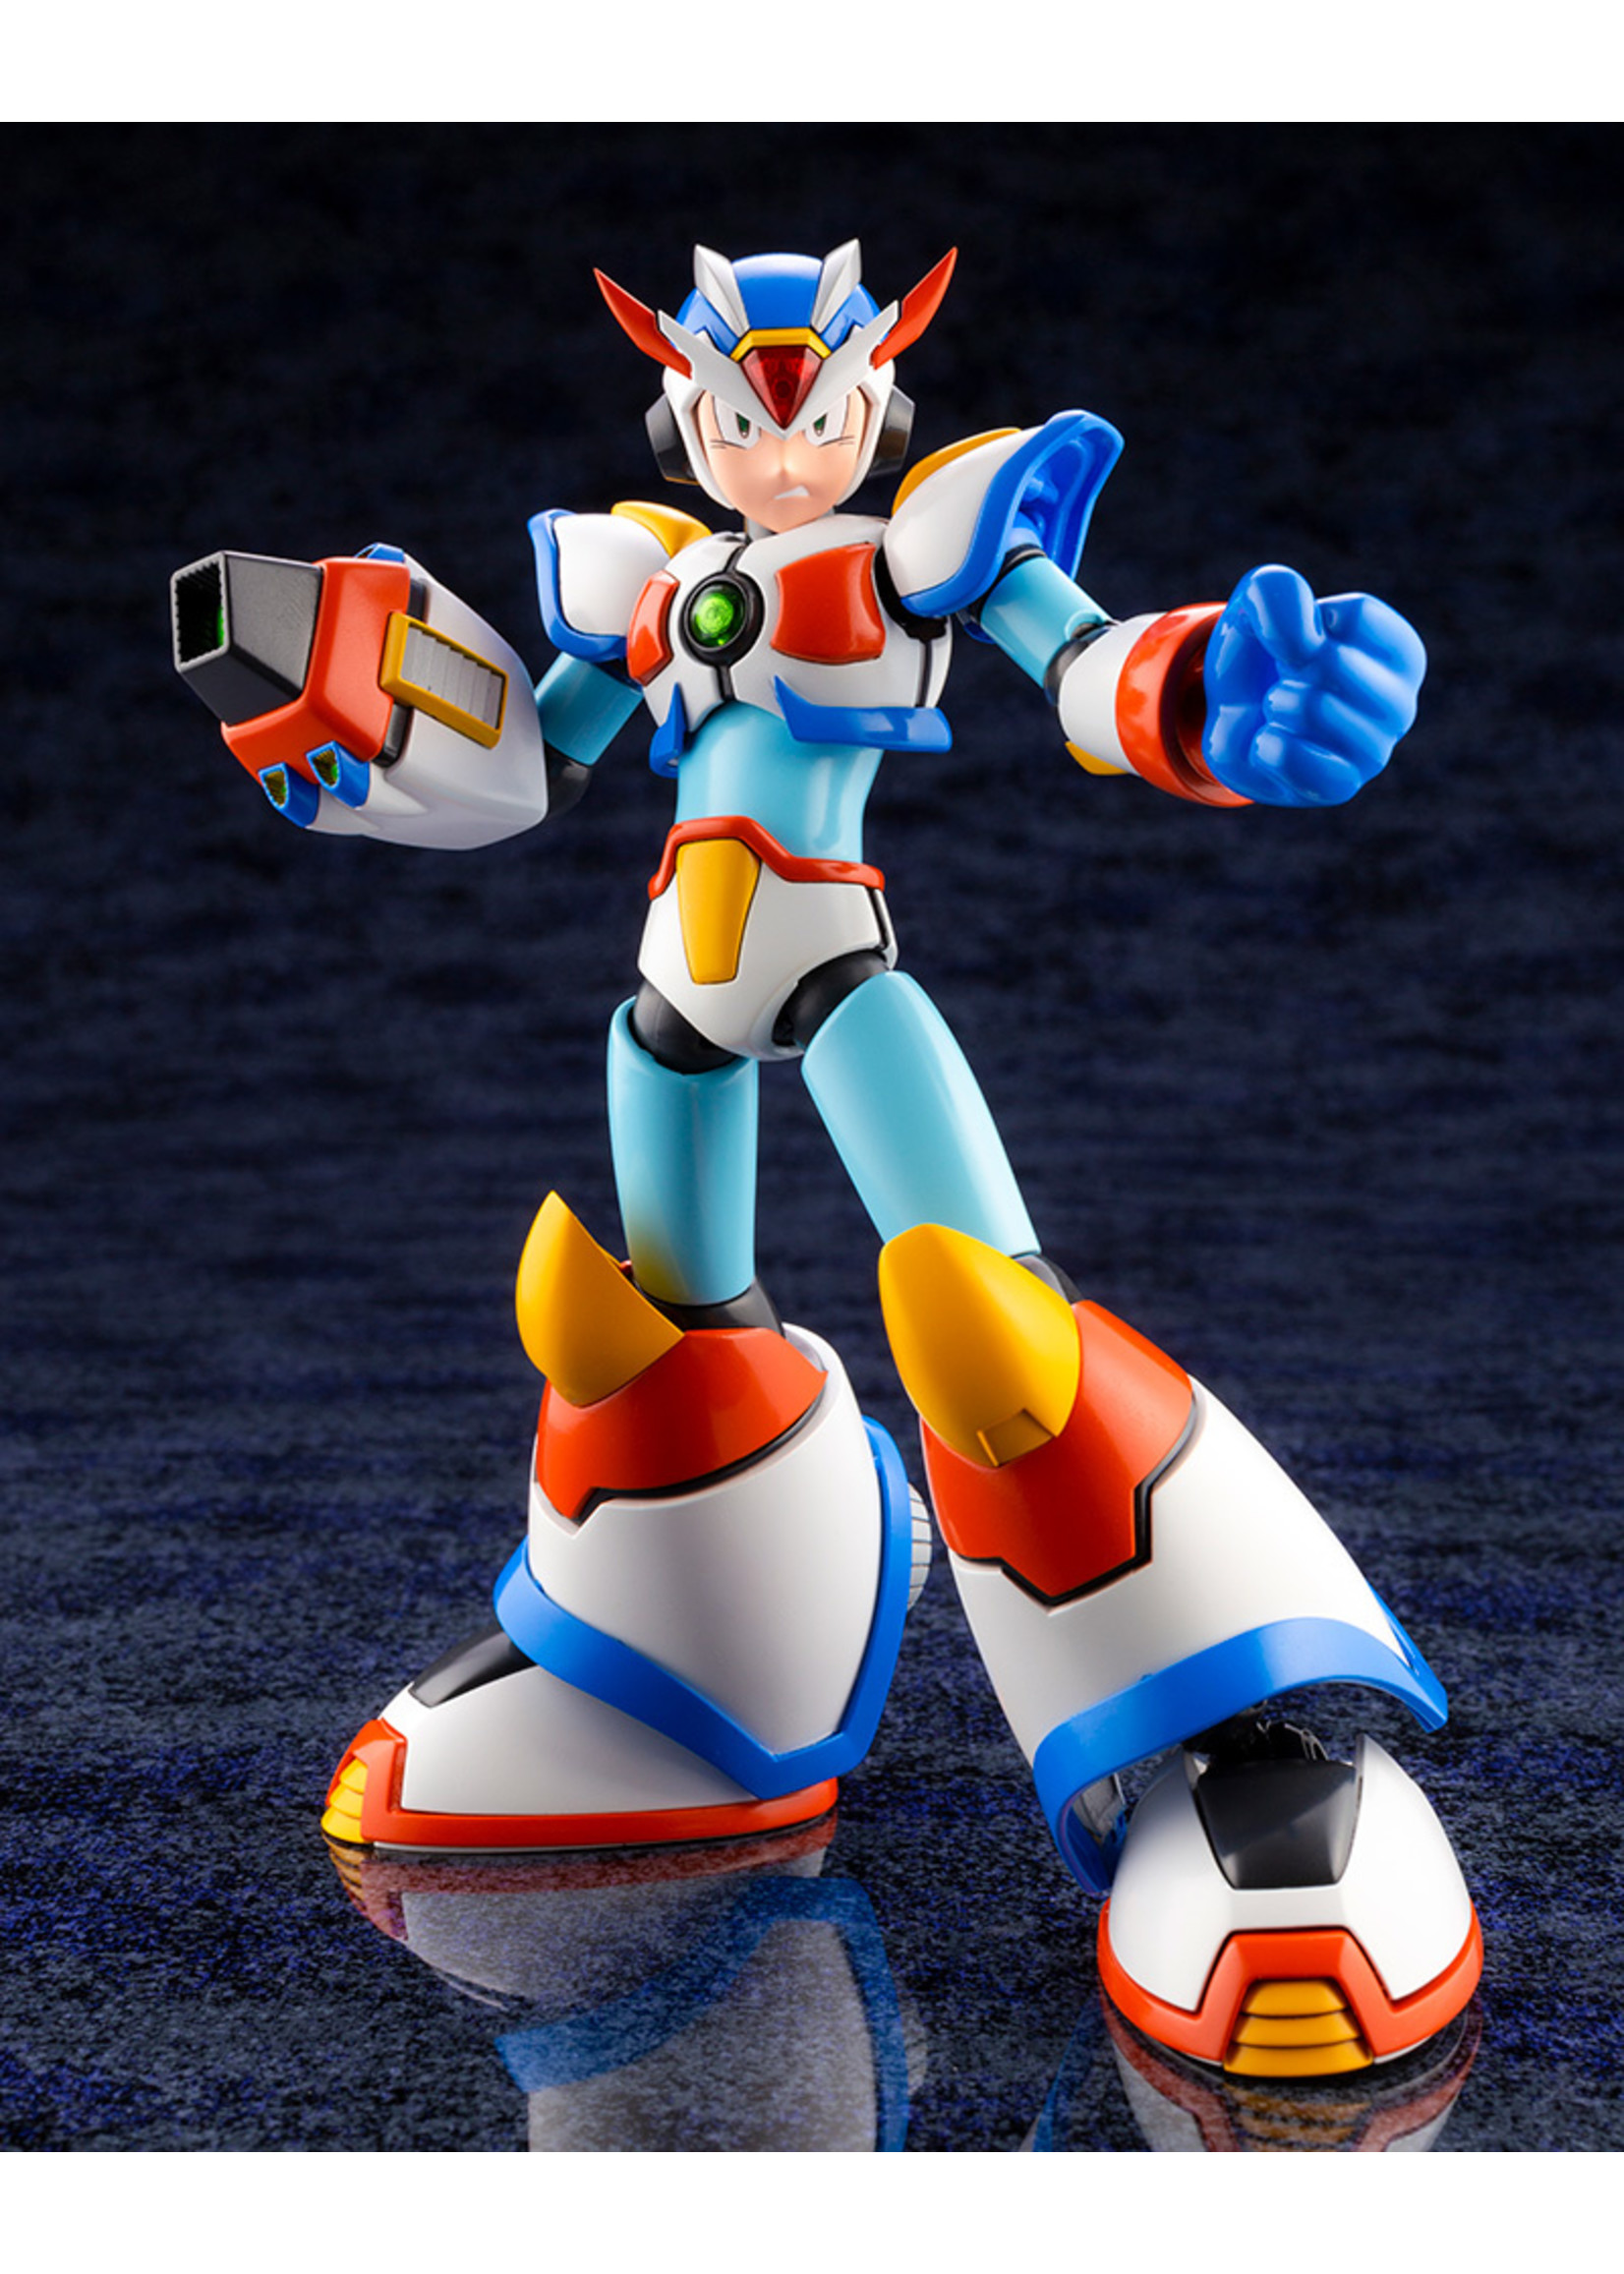 Kotobukiya KP639 - Mega Man X Max Armor